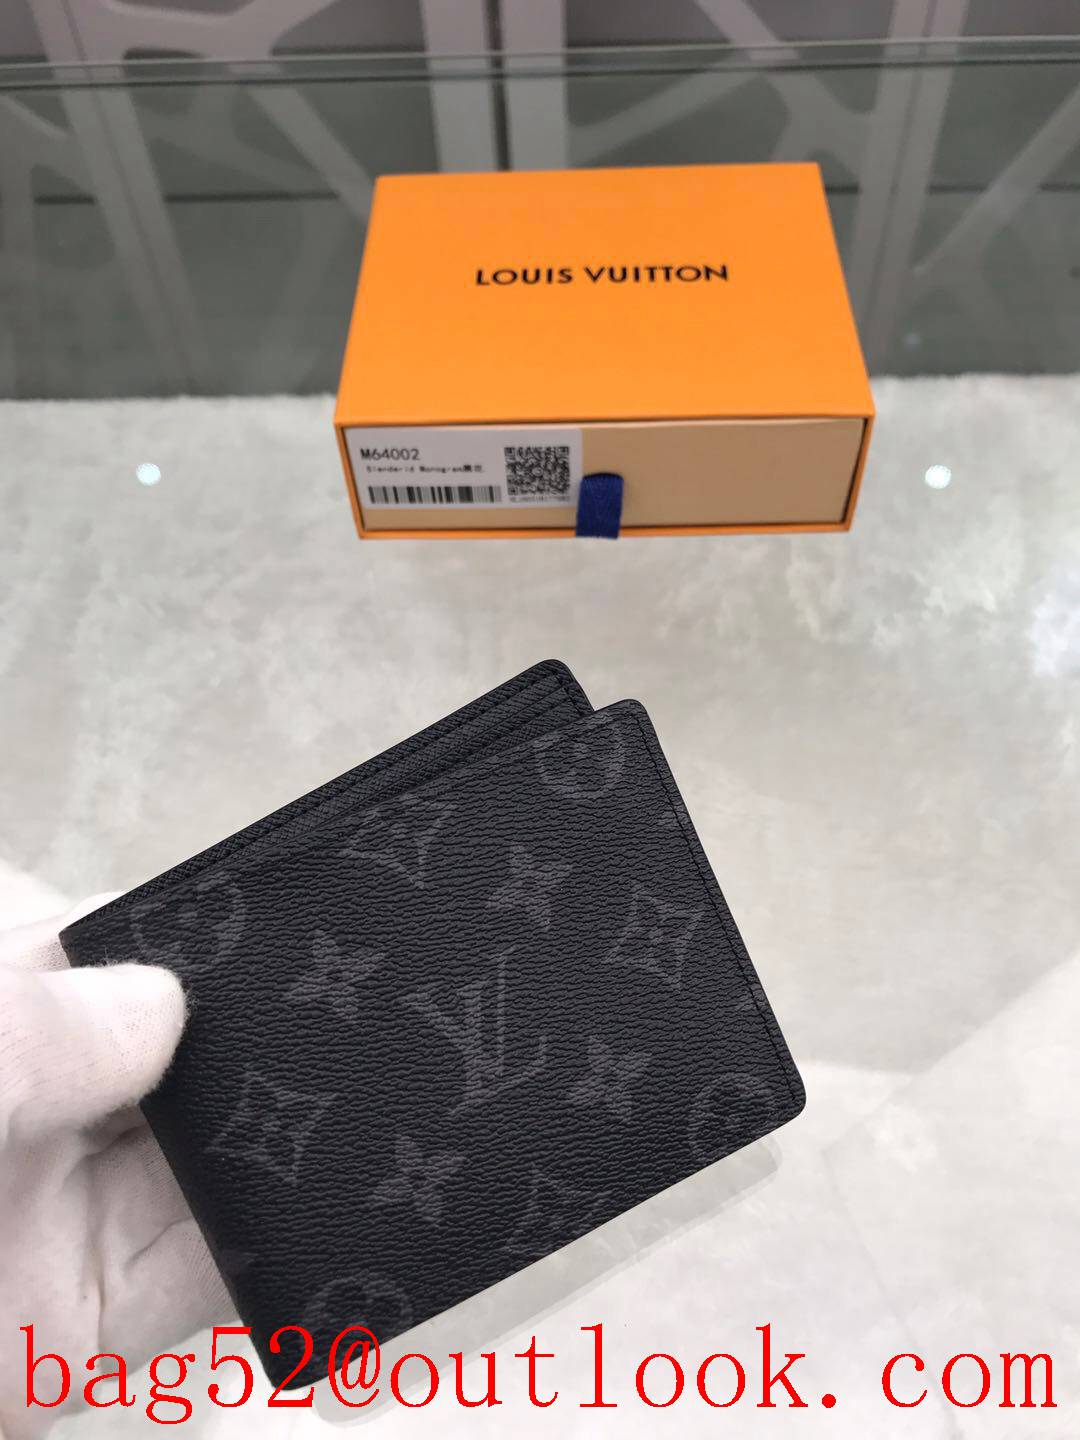 LV Louis Vuitton black monogram M64002 short wallet card holder purse M64002